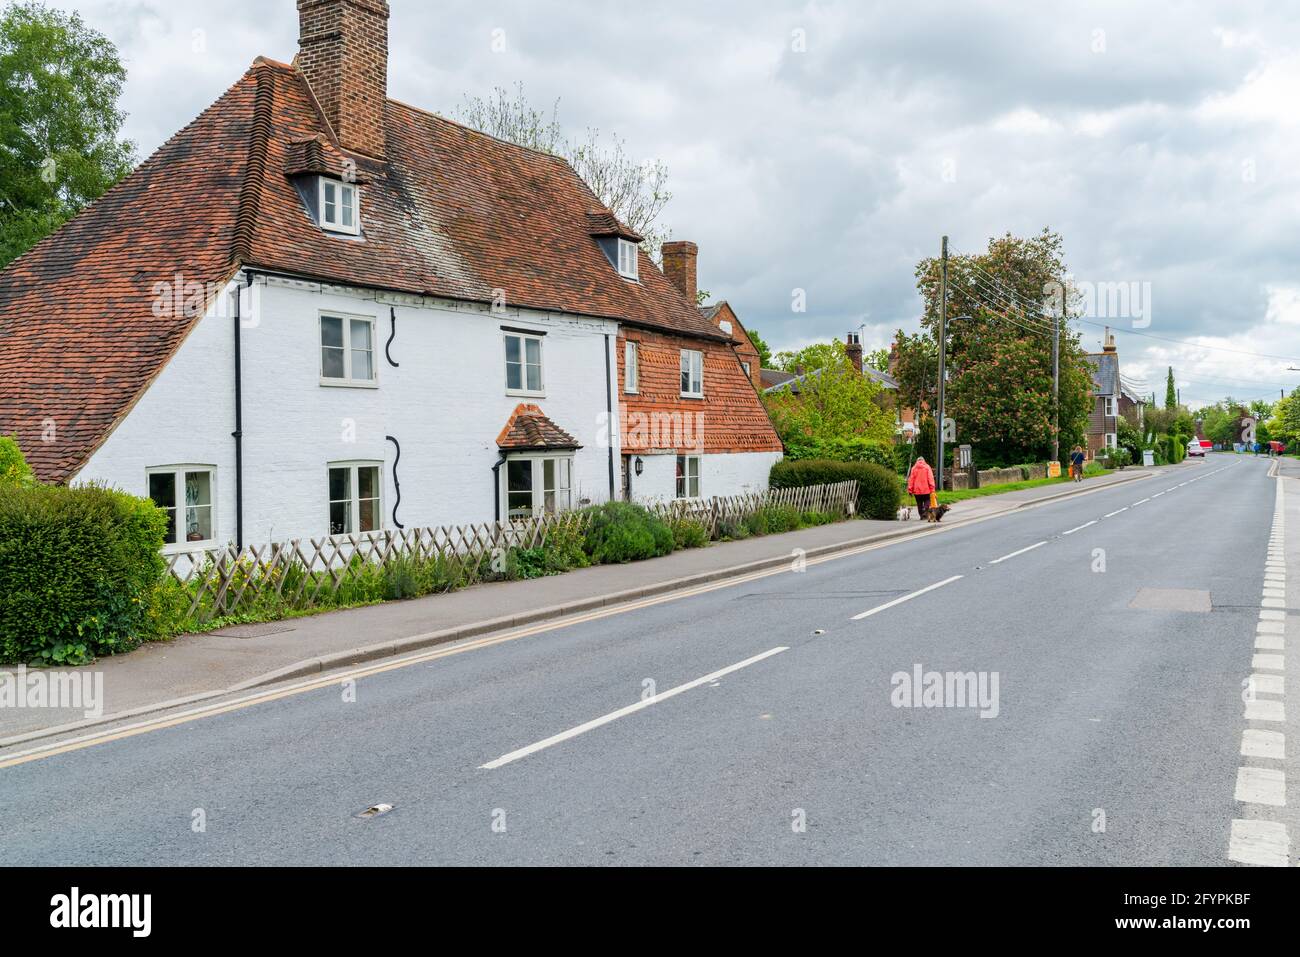 HEADCORN, Royaume-Uni - 26 MAI 2021 : vue sur la rue de Headcorn, un village et une paroisse civile dans le quartier de Maidstone dans le Kent. Banque D'Images